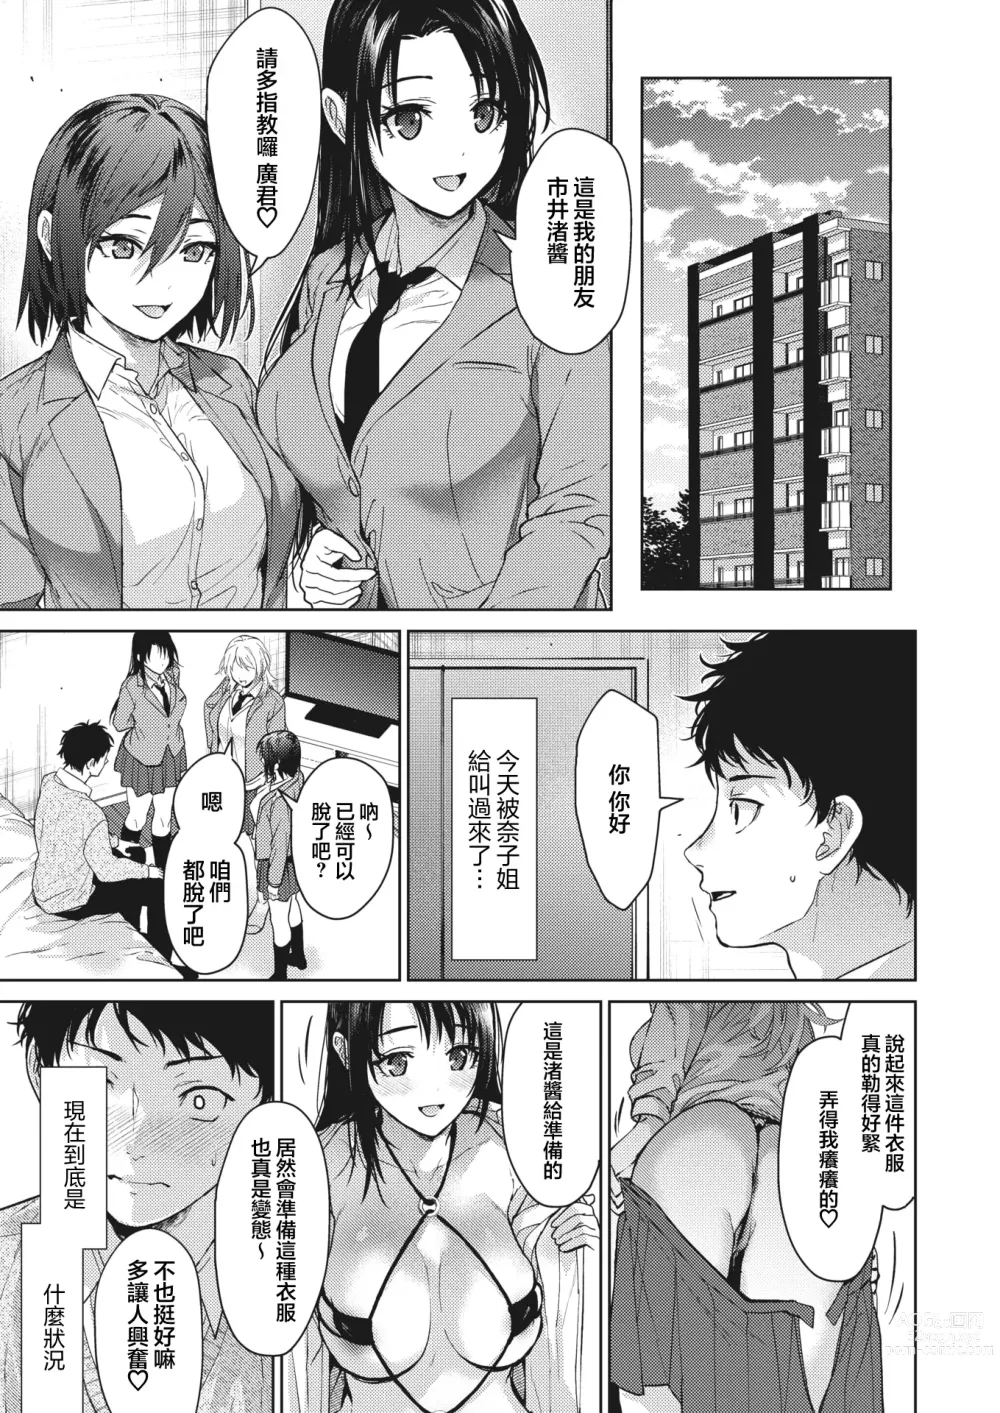 Page 40 of manga Onee-chan-tachi to Issho ni Zenpen